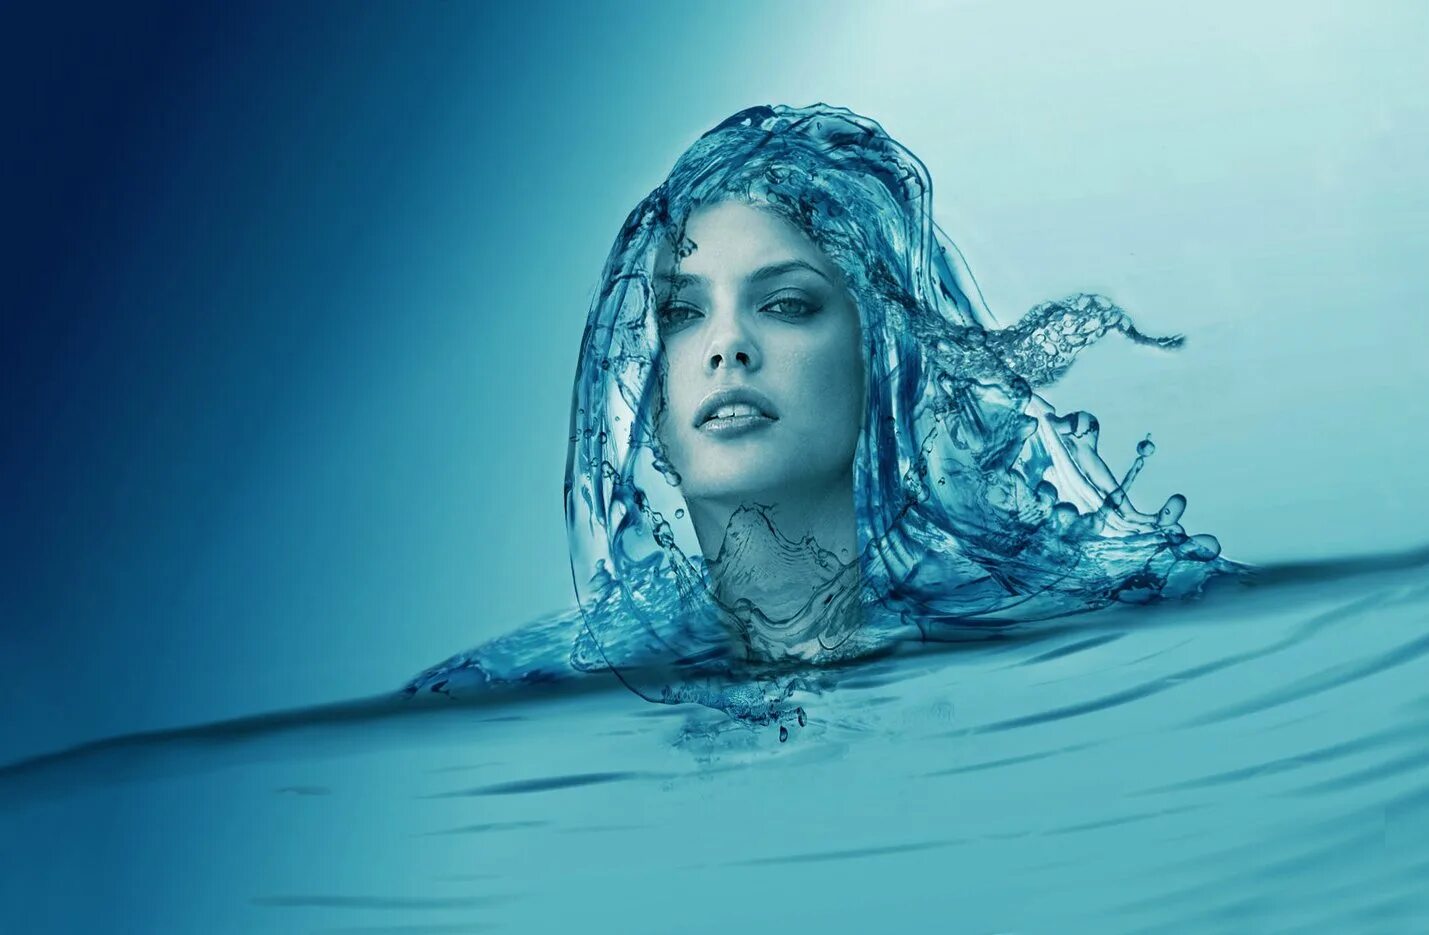 Силен вода. Женщина вода. Образ воды. Женщина из воды. Девушка из воды.